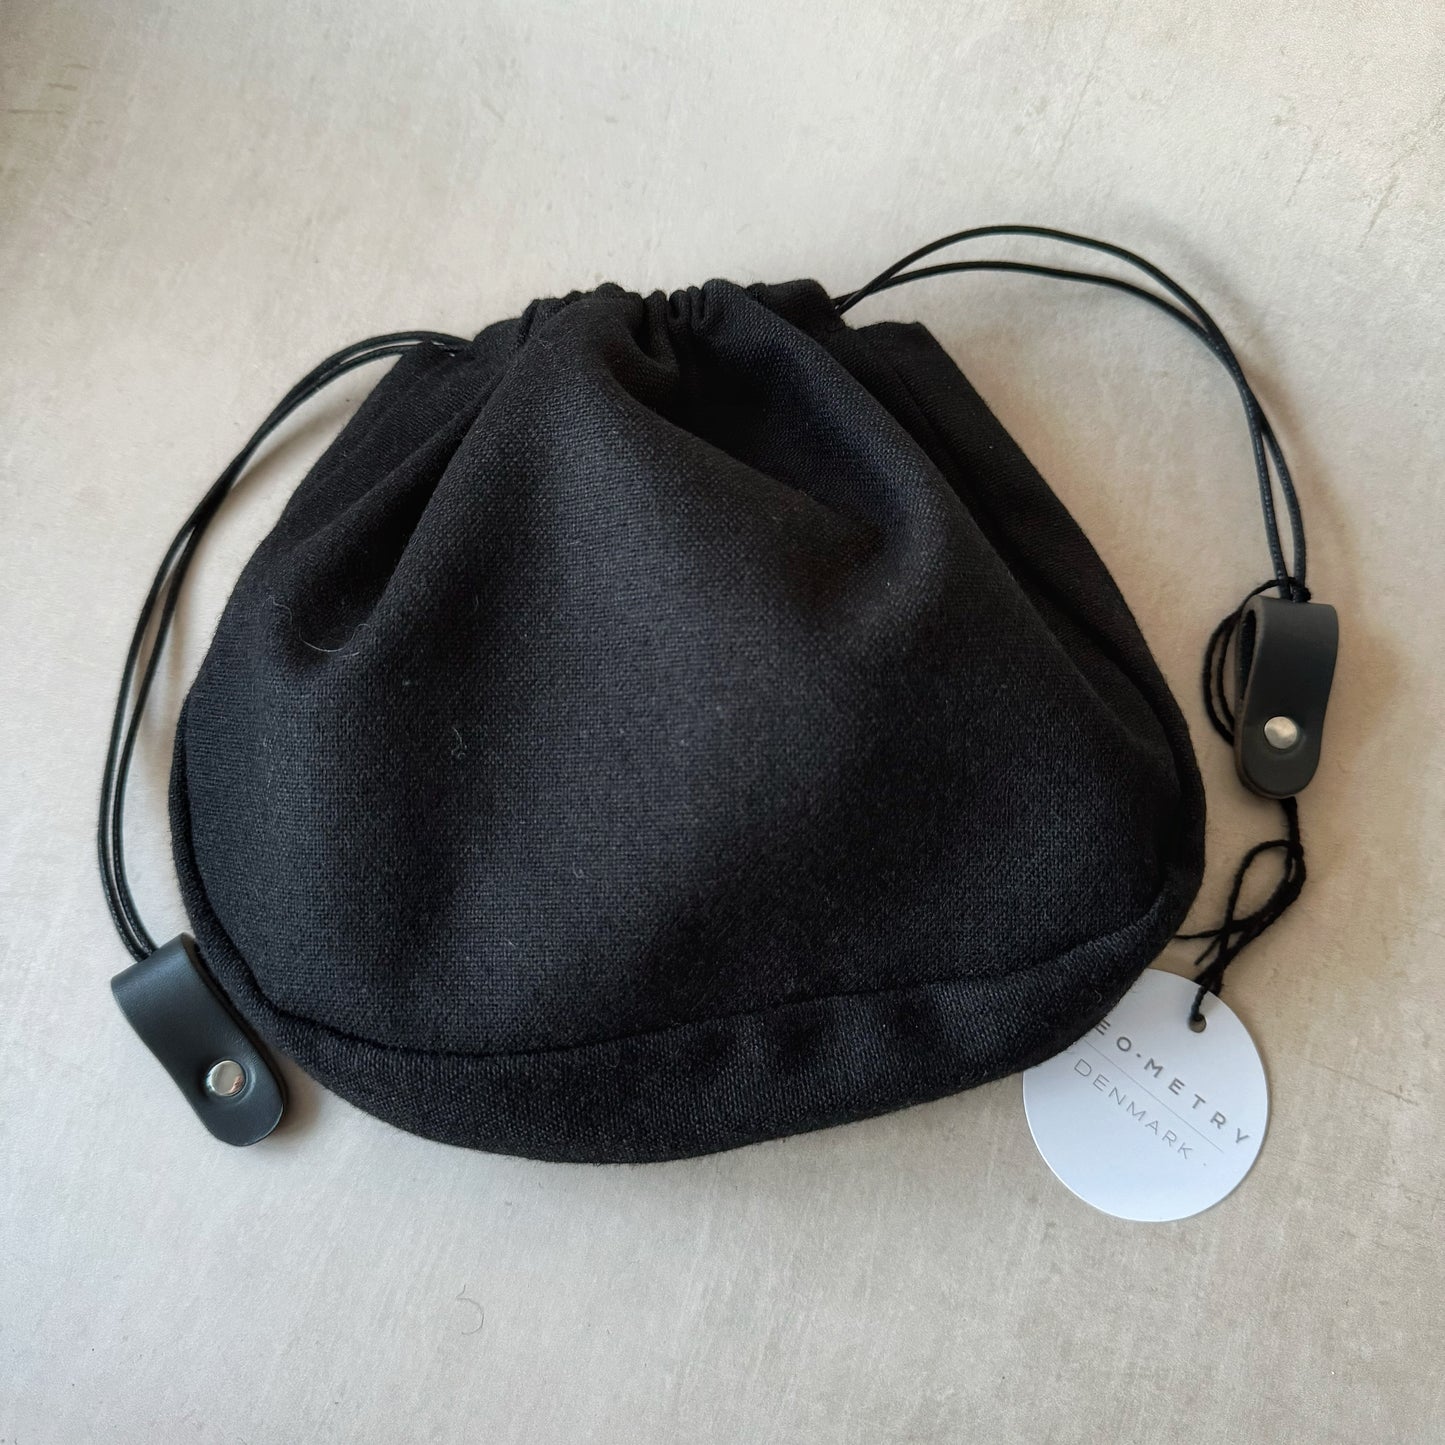 Geo-Metry Inner Bag for Cocoon - Black with Gun Metal Leather Tab